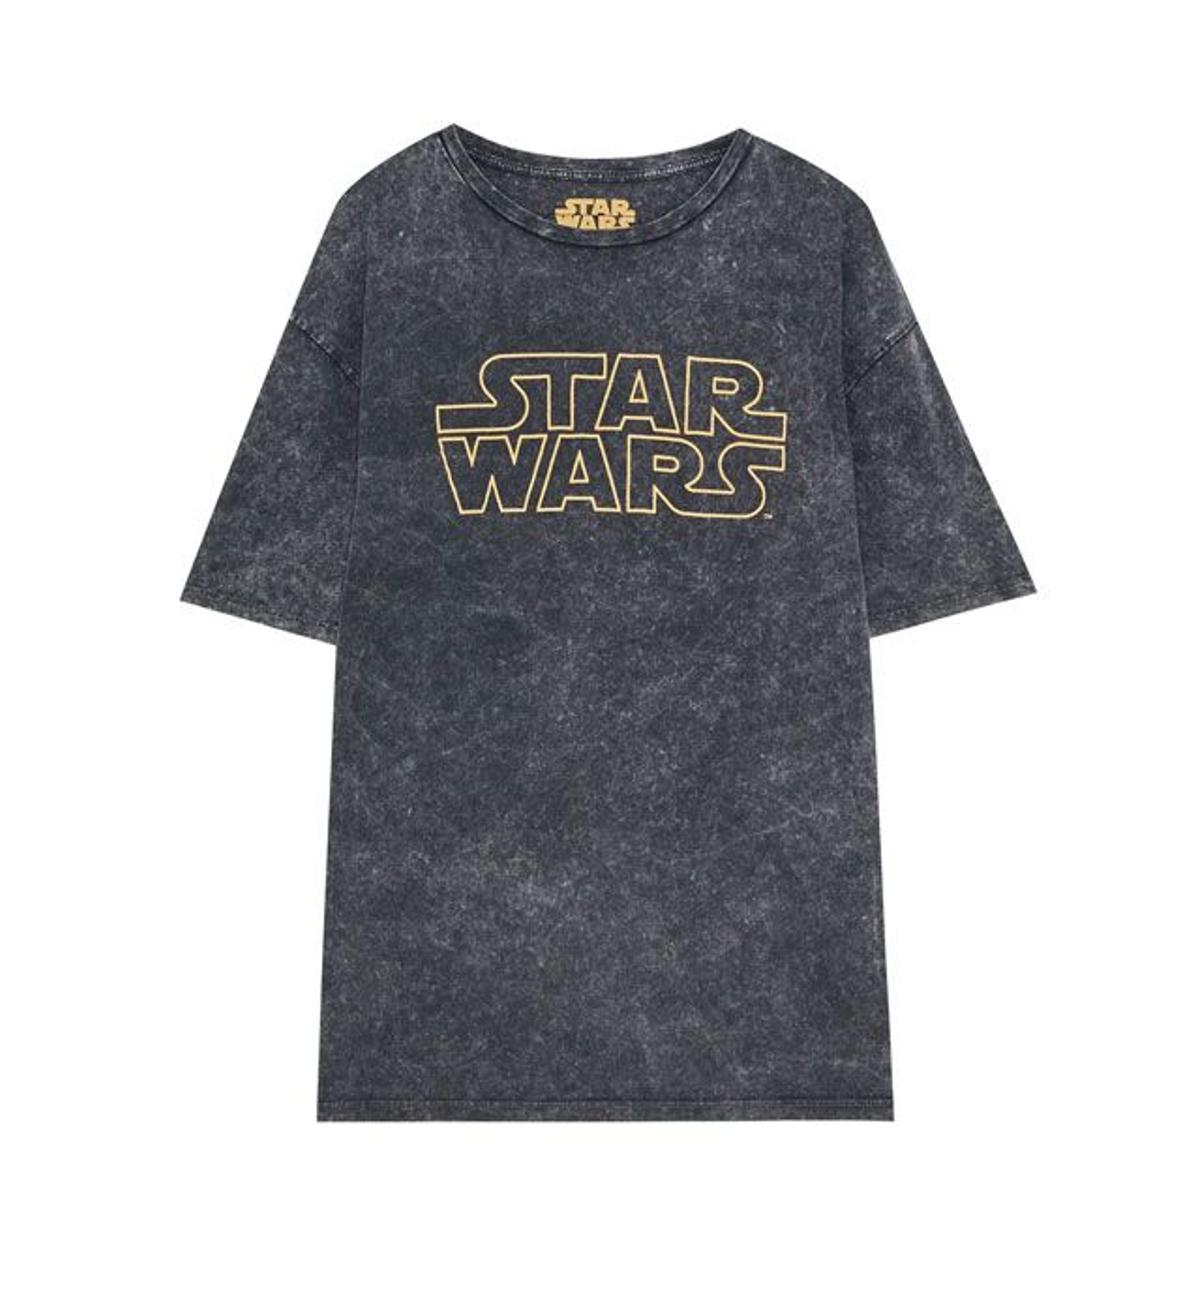 La moda se inspira en Star Wars: camiseta con logo